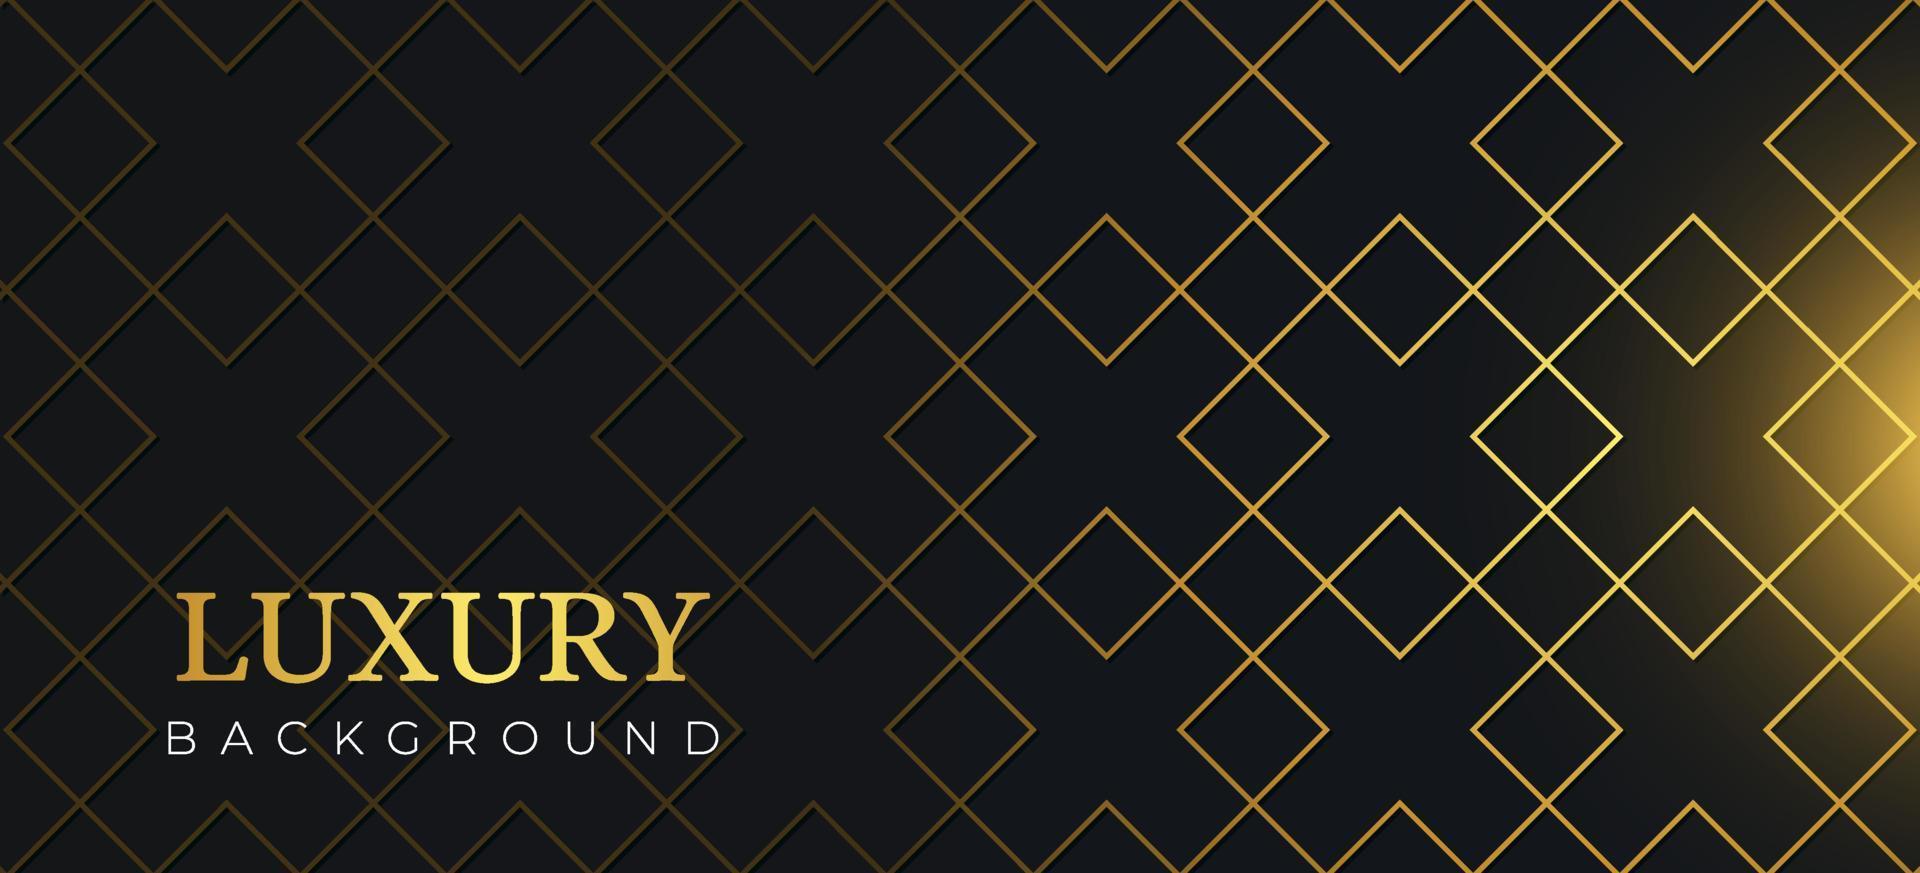 geometrico astratto moderno su sfondo nero. modello di lusso con forma dorata adatto per banner web, invito, biglietto di auguri, biglietto da visita vettore